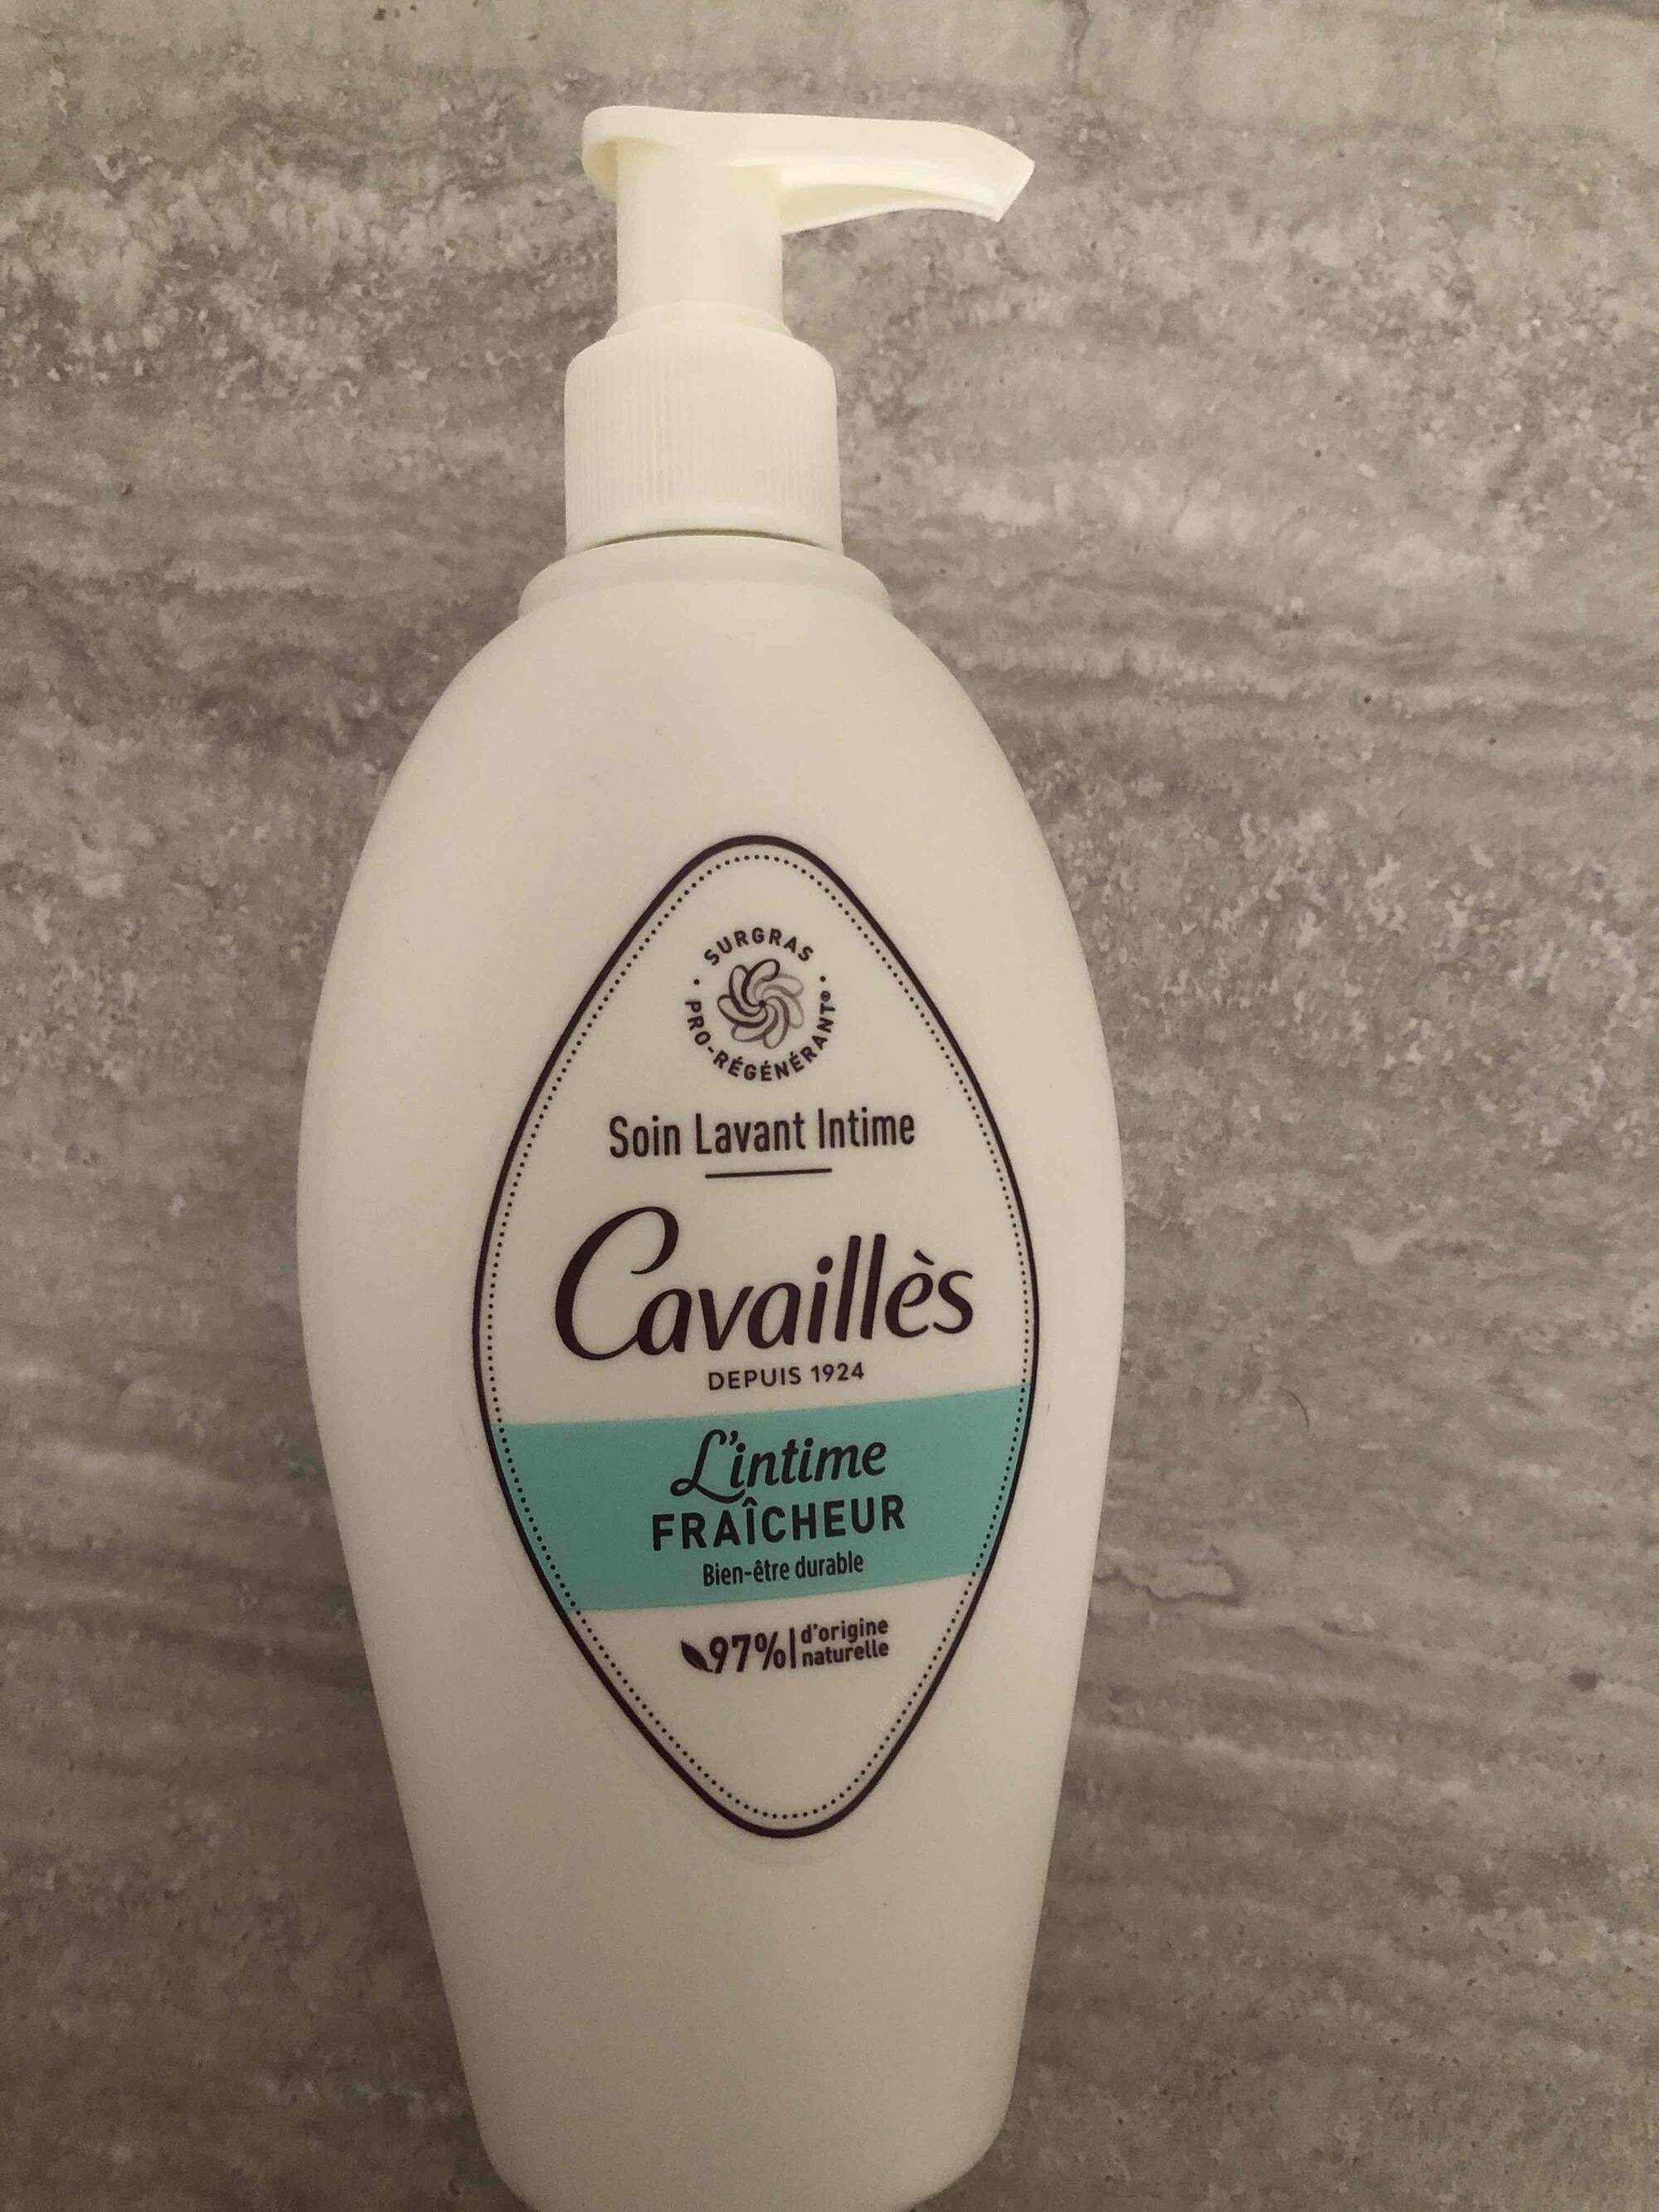 CAVAILLES - Soin lavant intime fraîcheur 